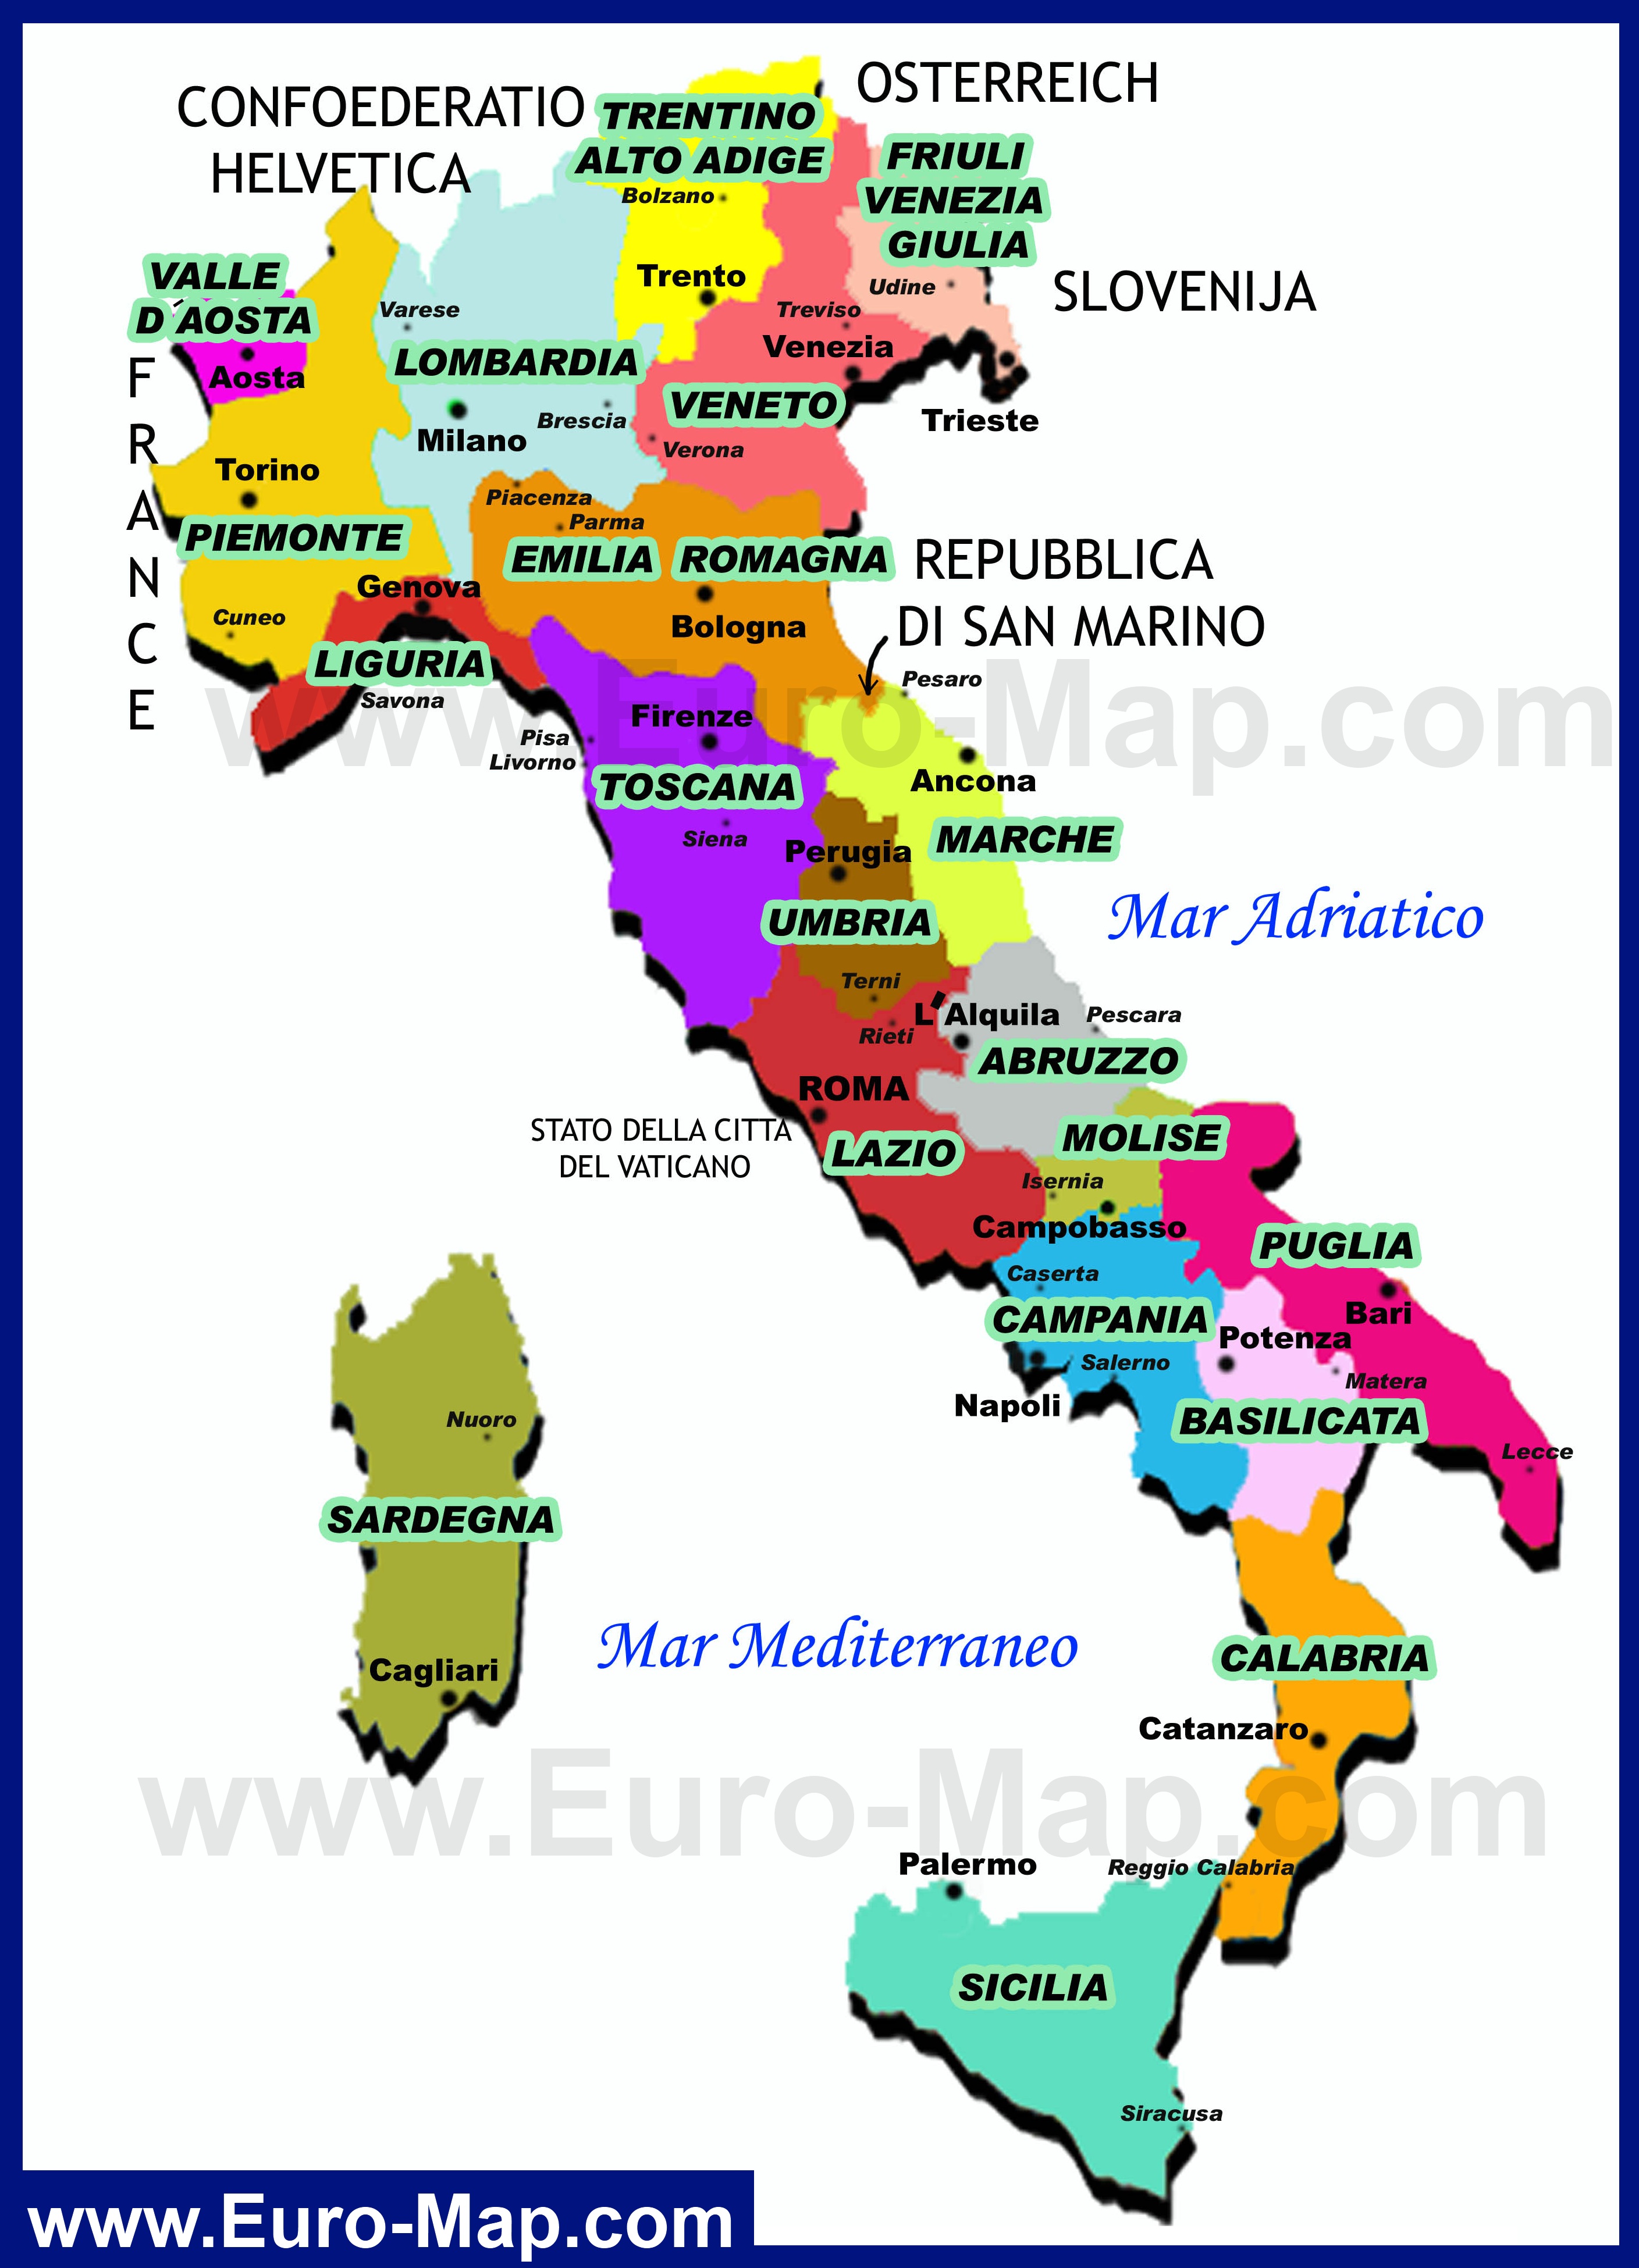 Венето на карте италии фригольды это земельные держания в англии